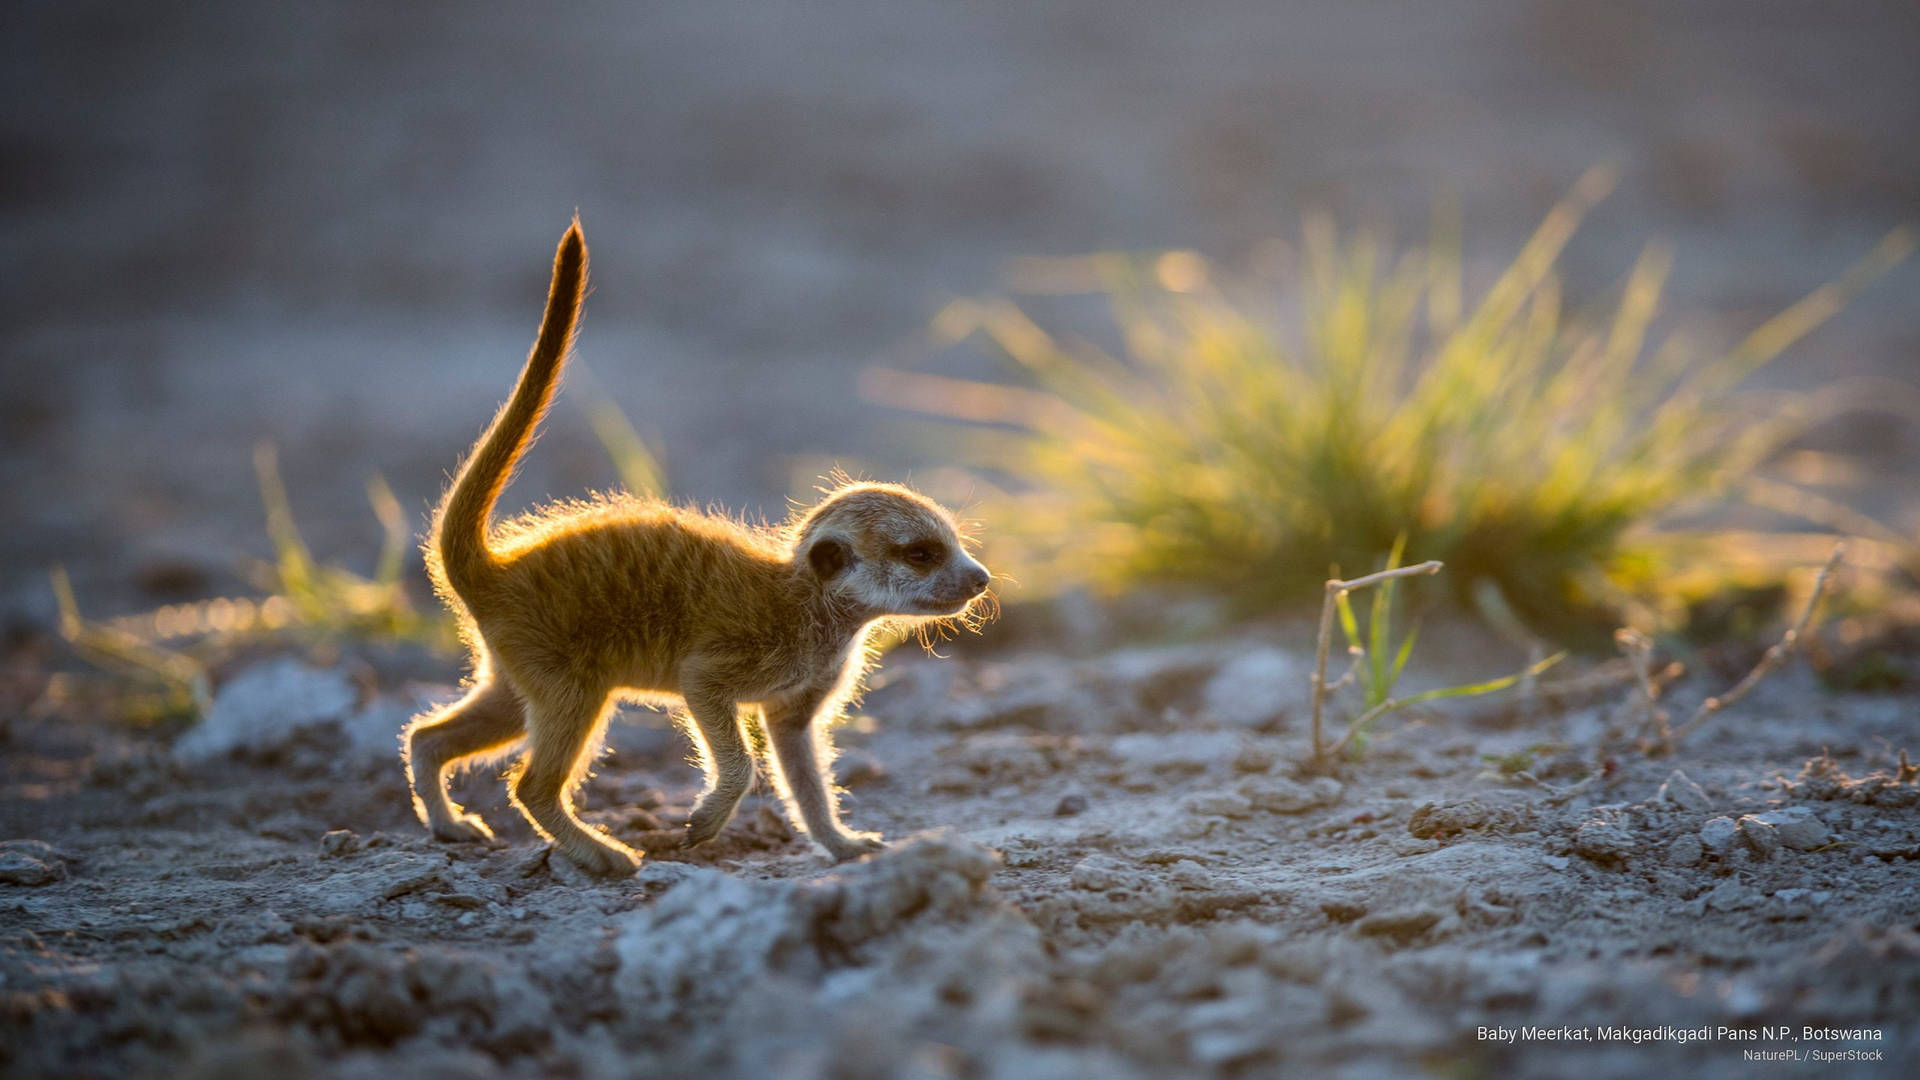 Meerkatbebé De Botsuana Fondo de pantalla